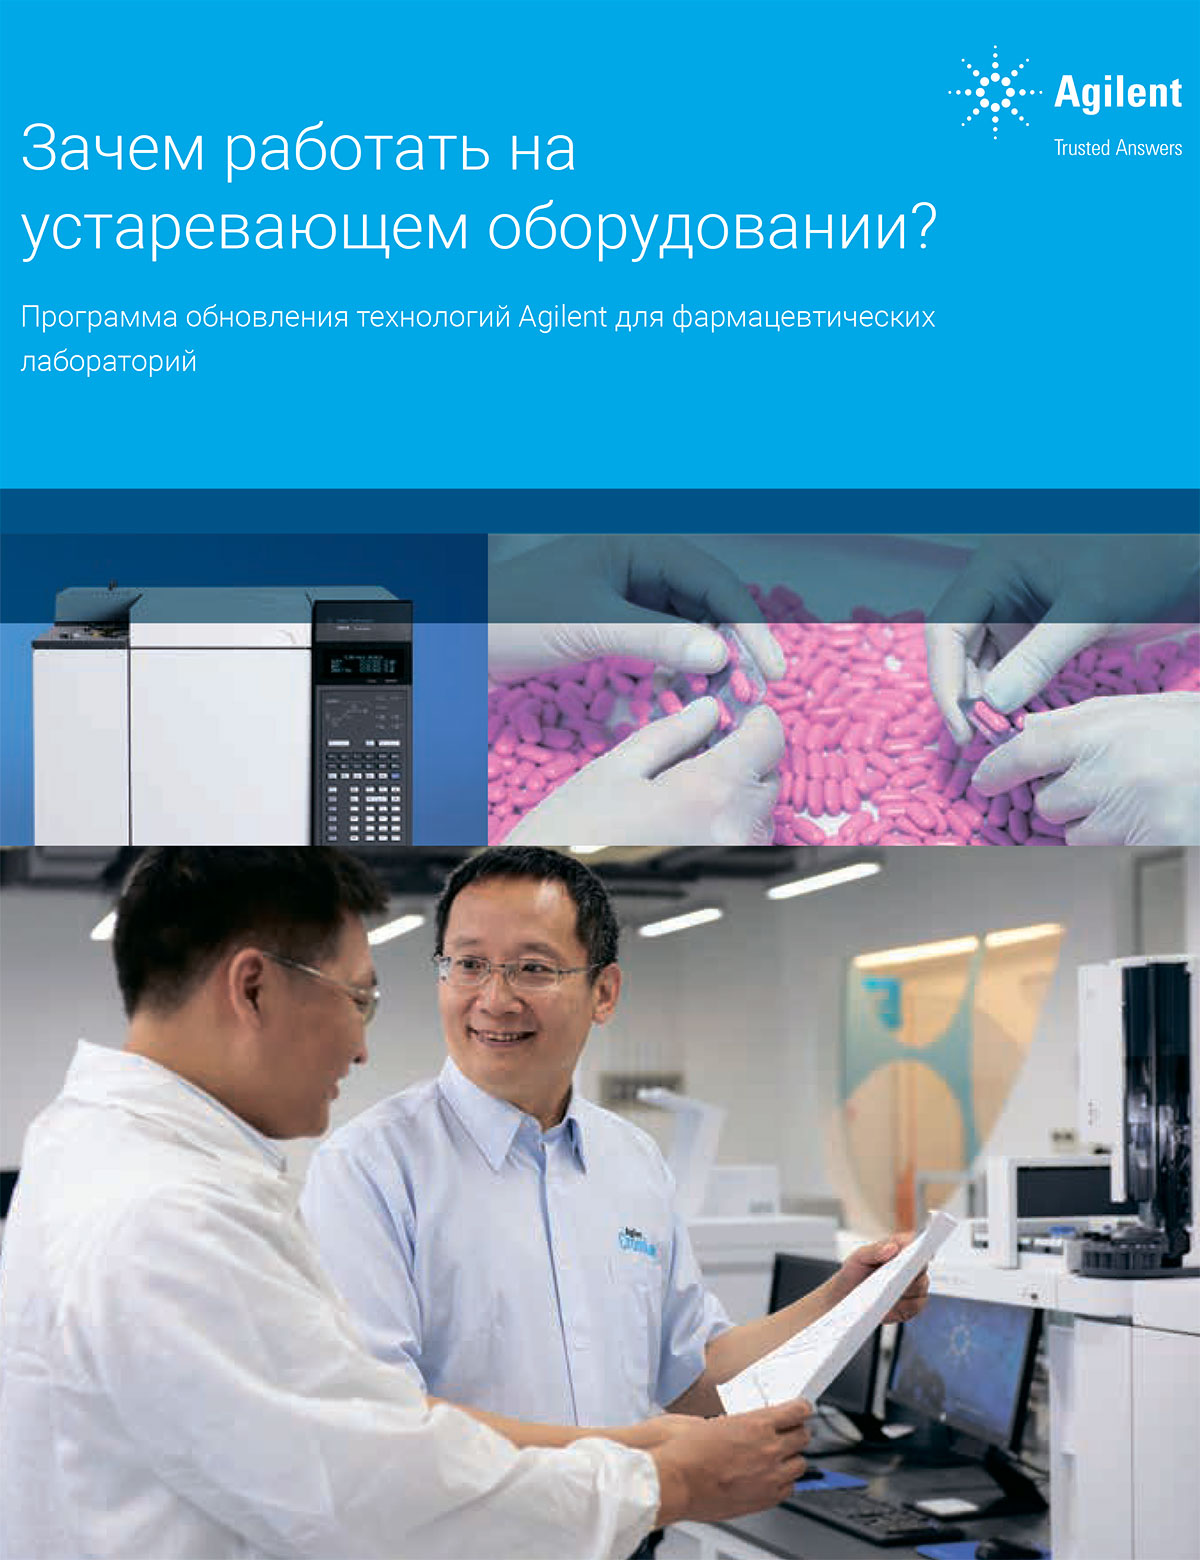 Программа обновления технологий Agilent для фармацевтических лабораторий